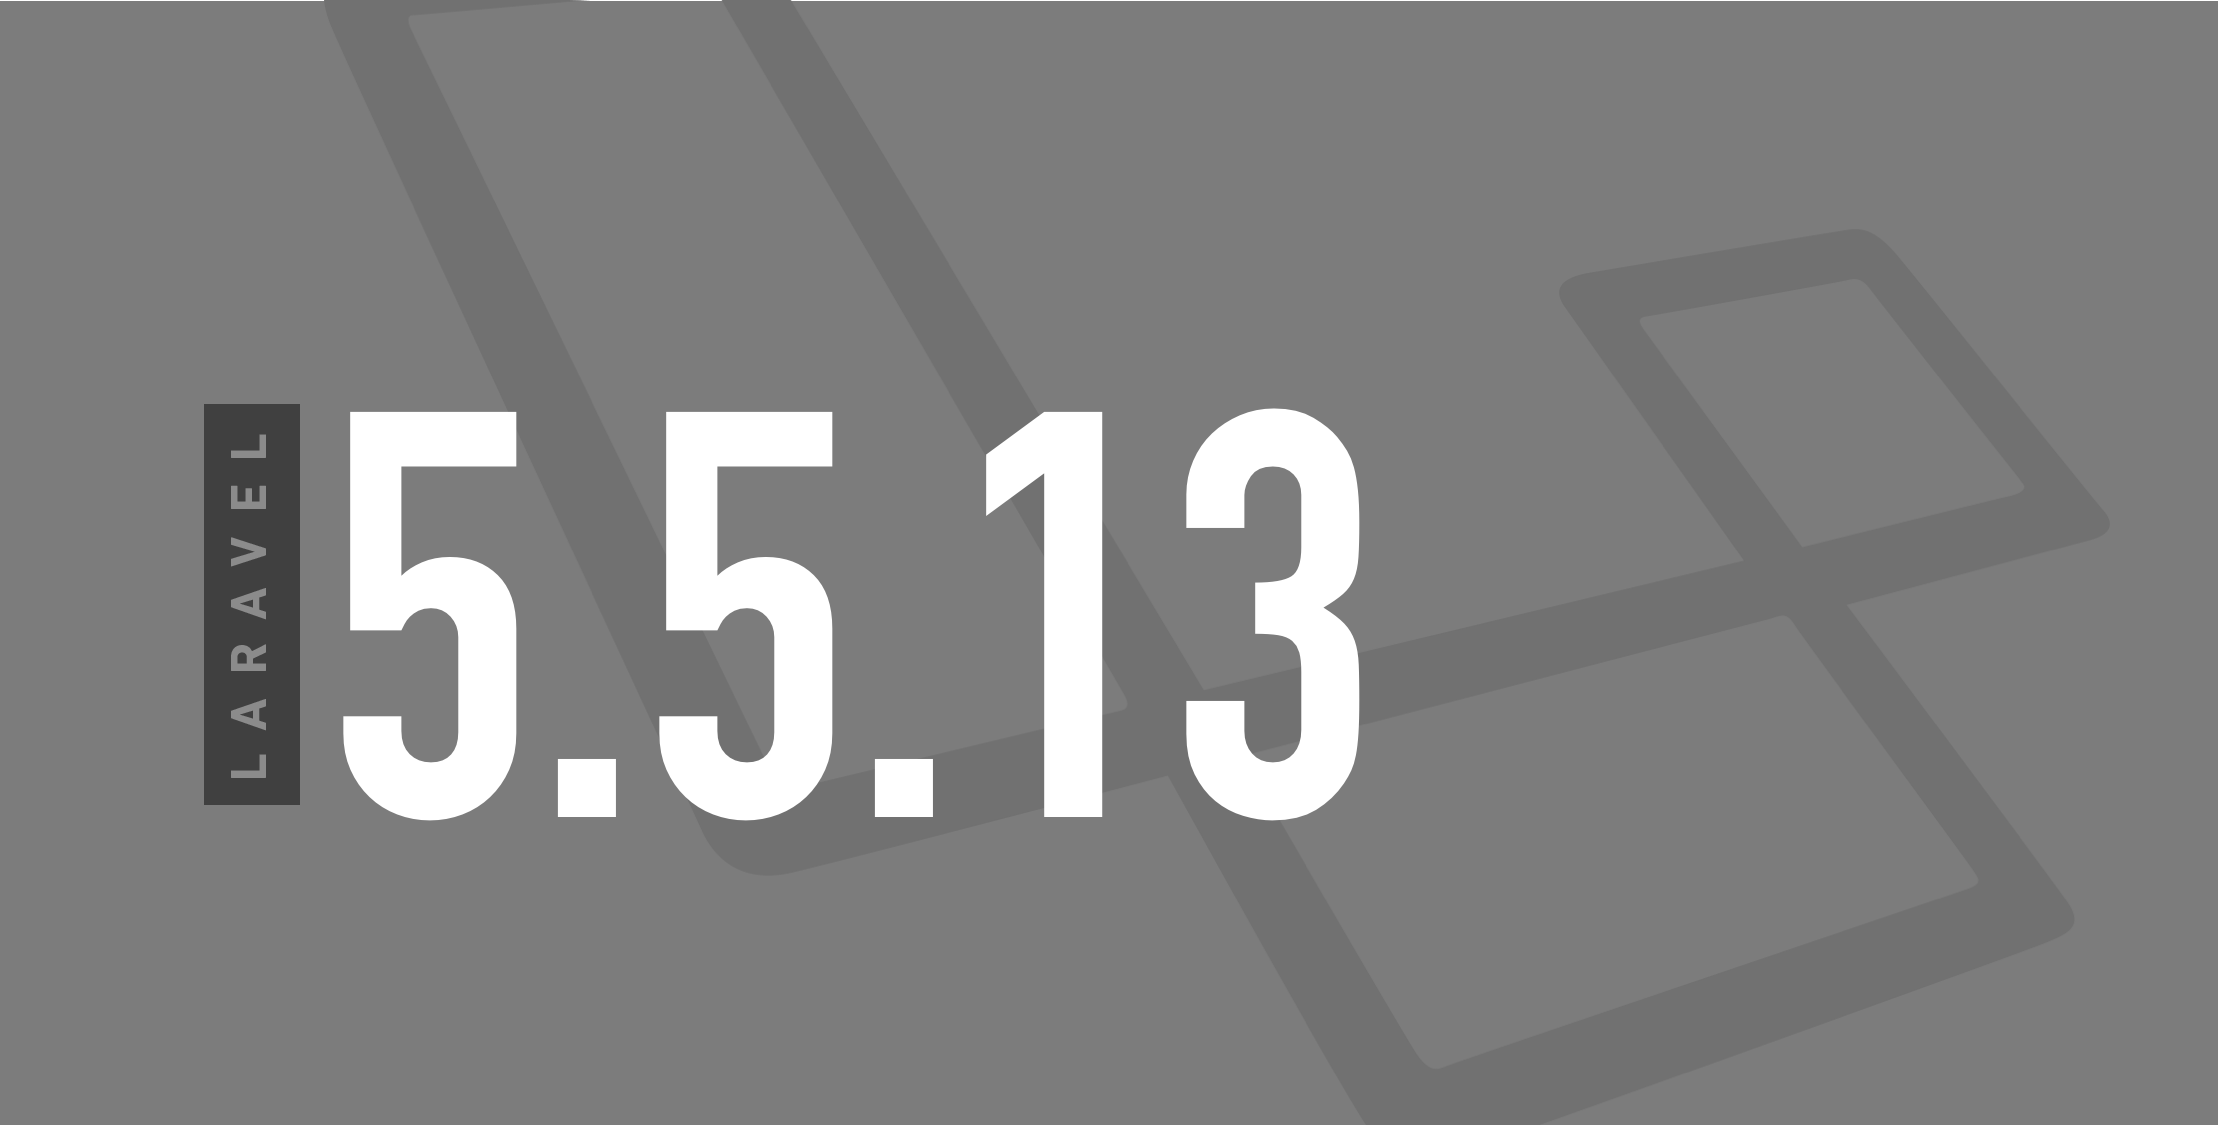 Laravel v5.5.13 released image